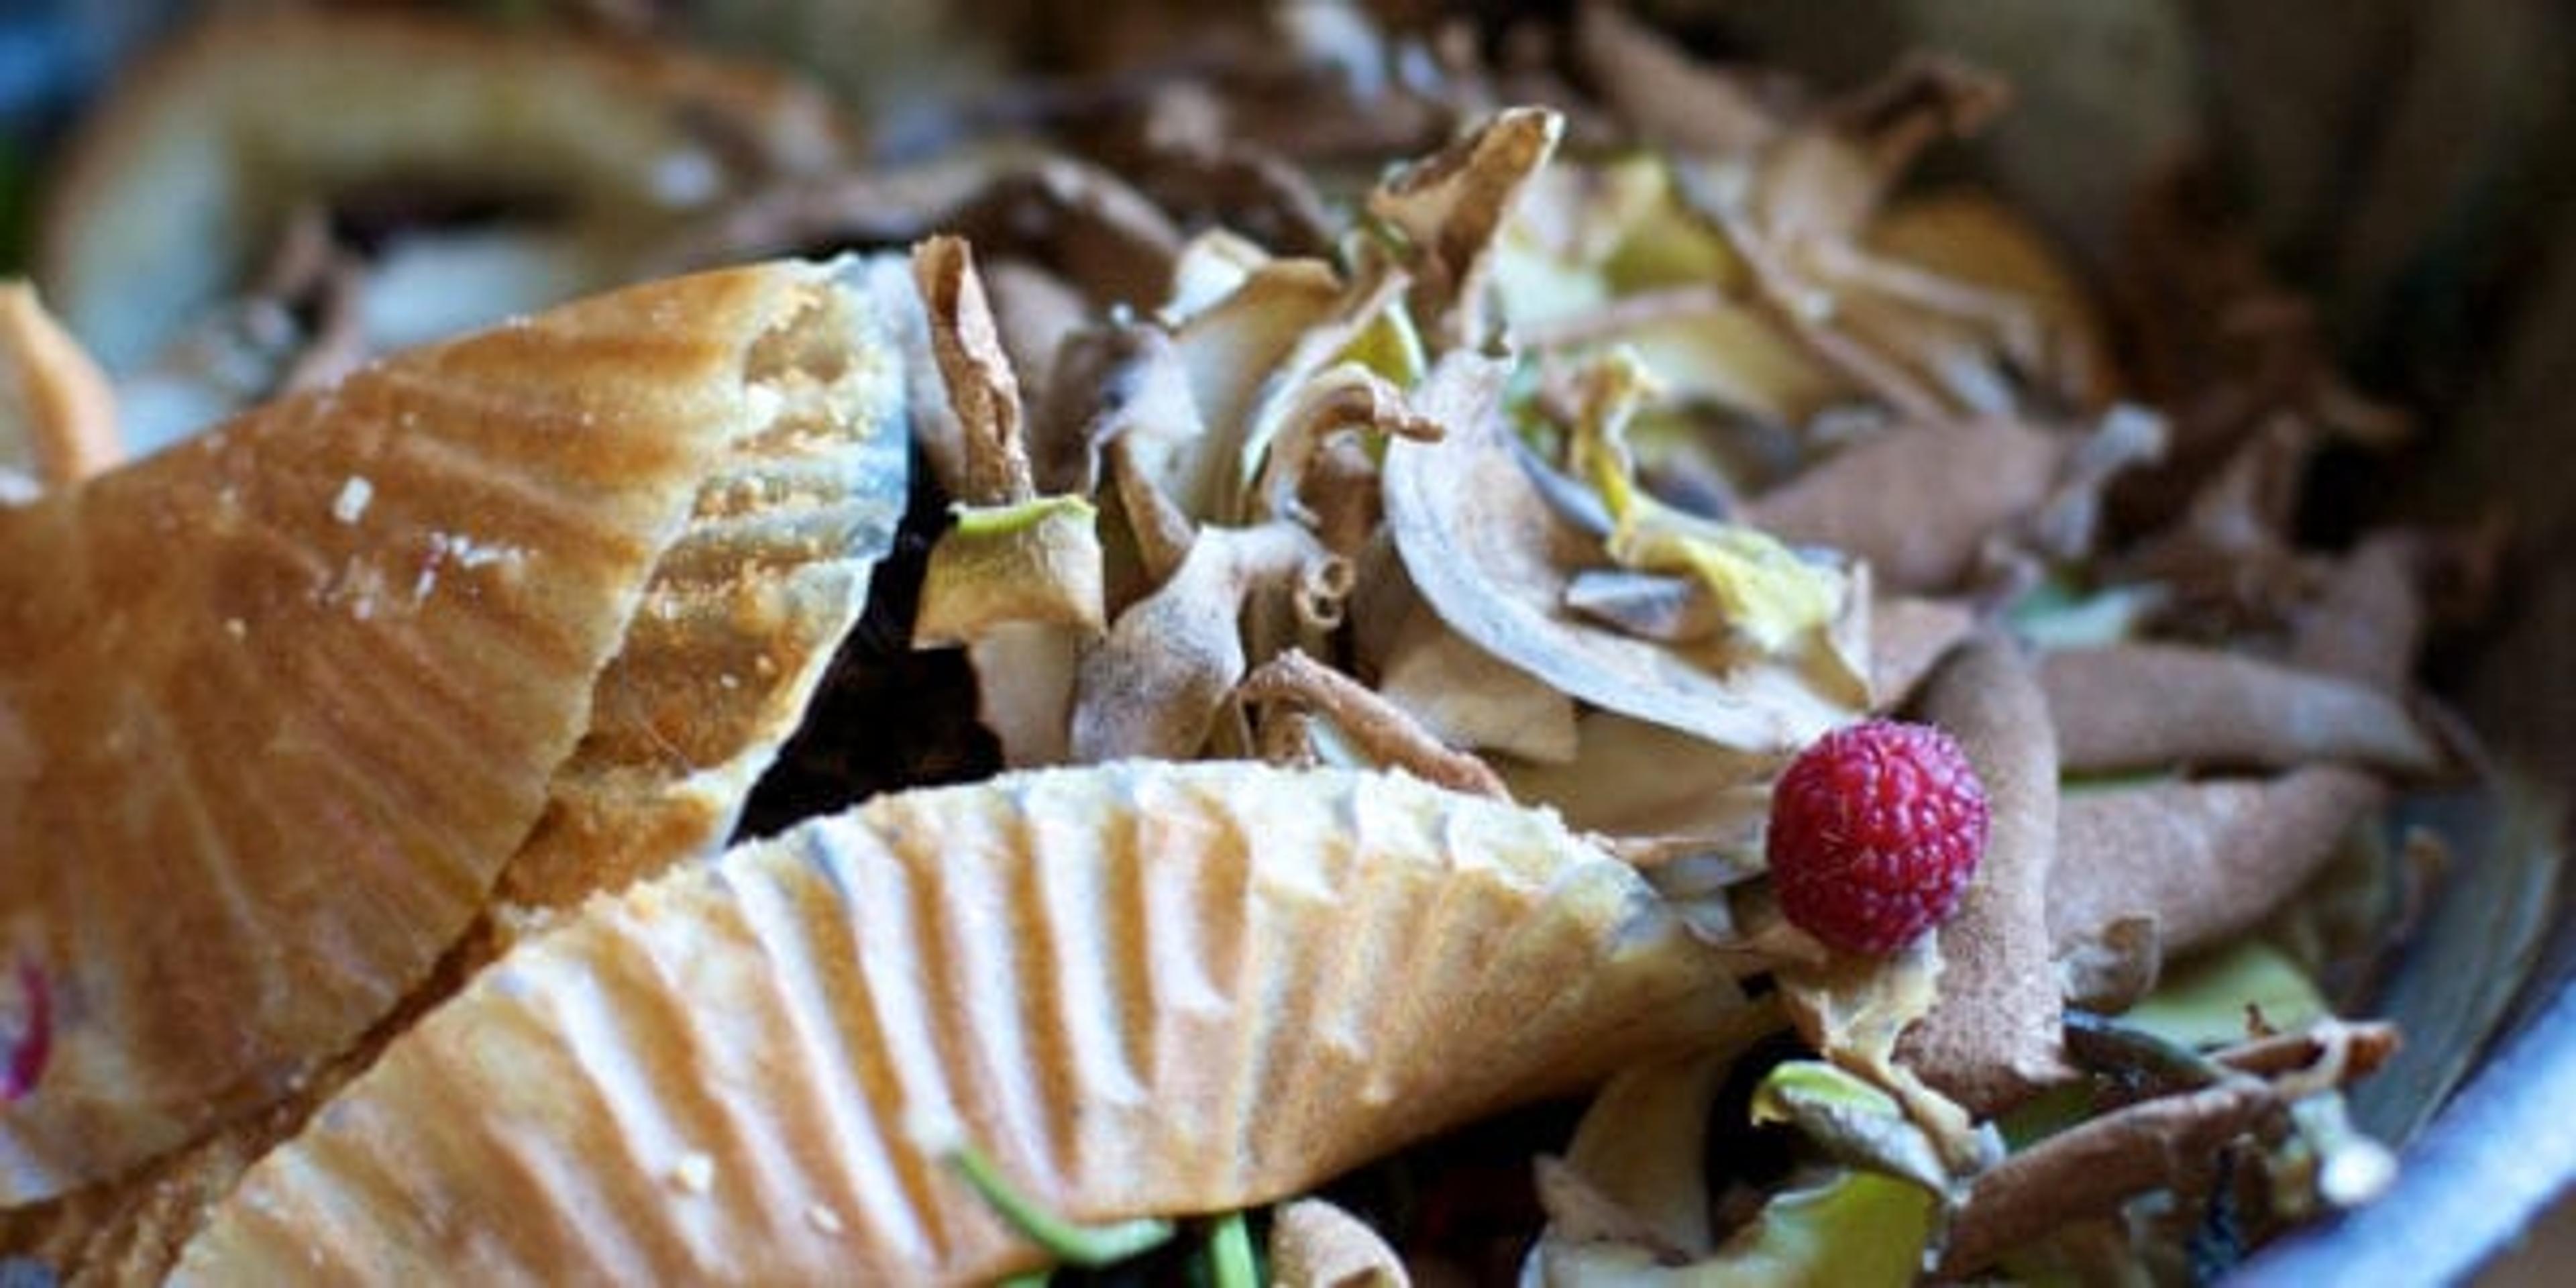 Food scraps in a compost bin.